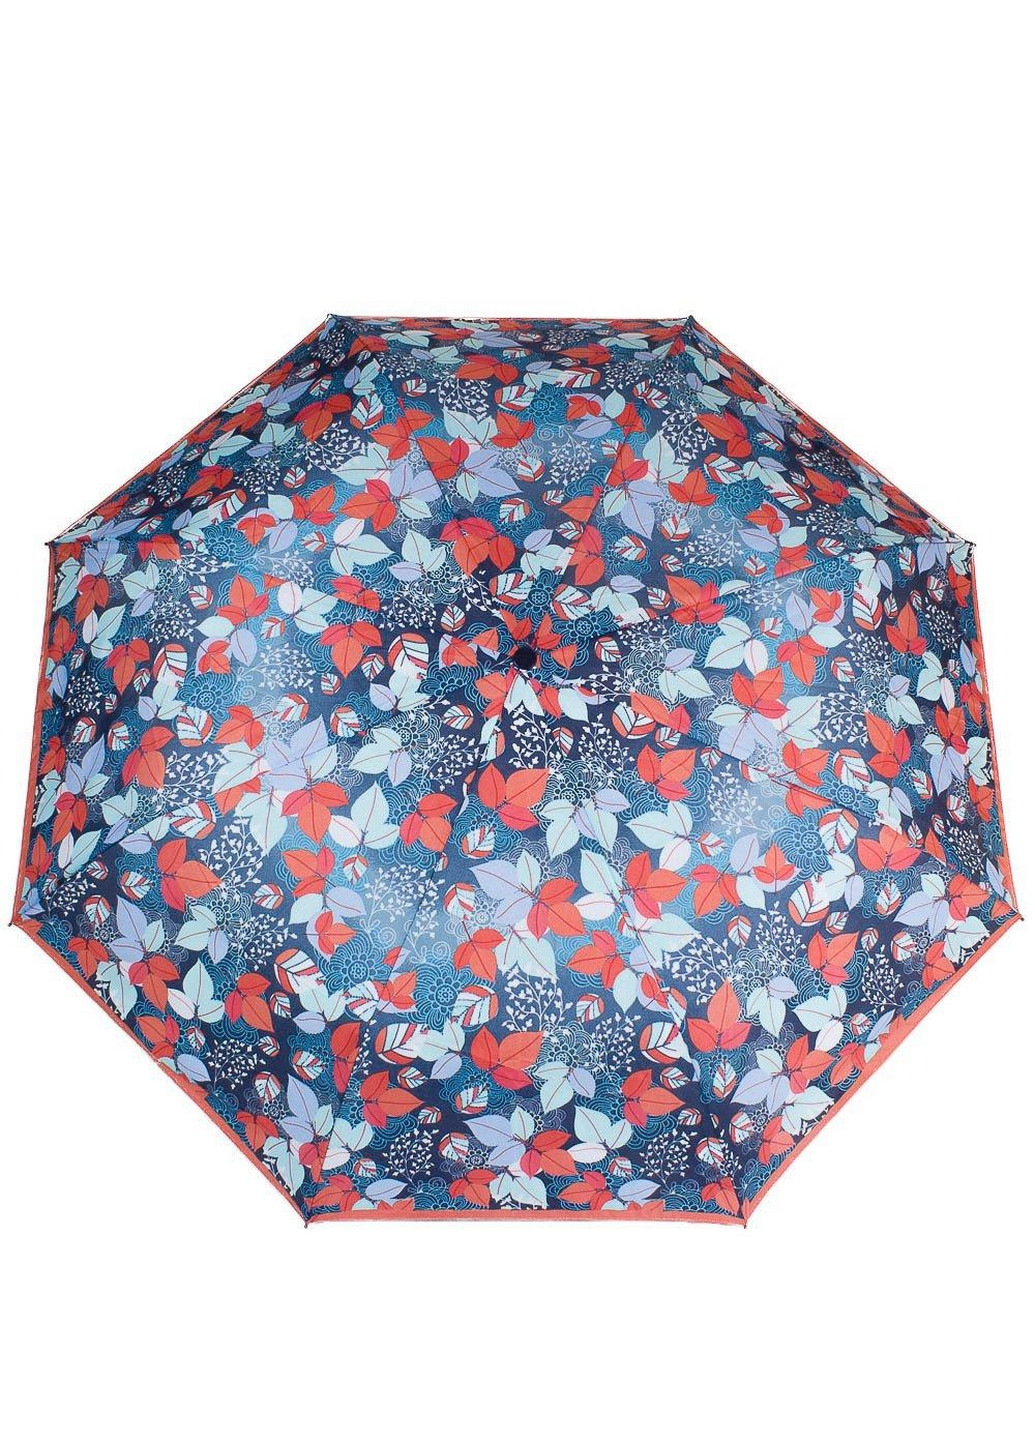 Складной женский зонт механический 99 см Airton (260285466)